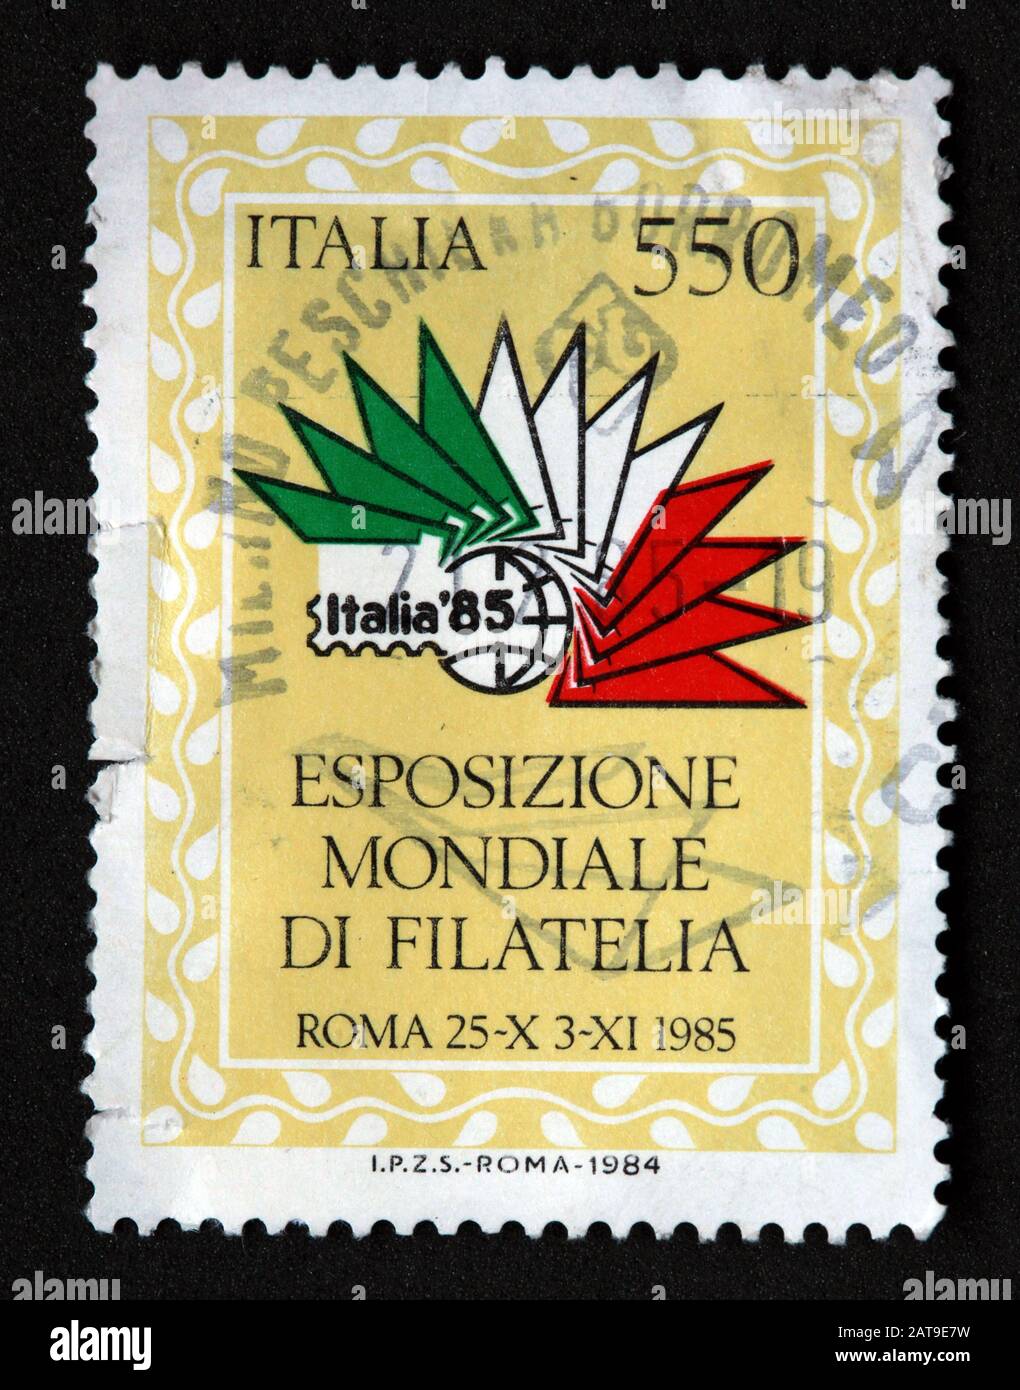 Francobollo italiano, poste Italia usato e affrancato, Italia 550lire Italia85 esposizione mondiale di Filatelia - Roma 25-X 3-XI, 1985 Foto Stock